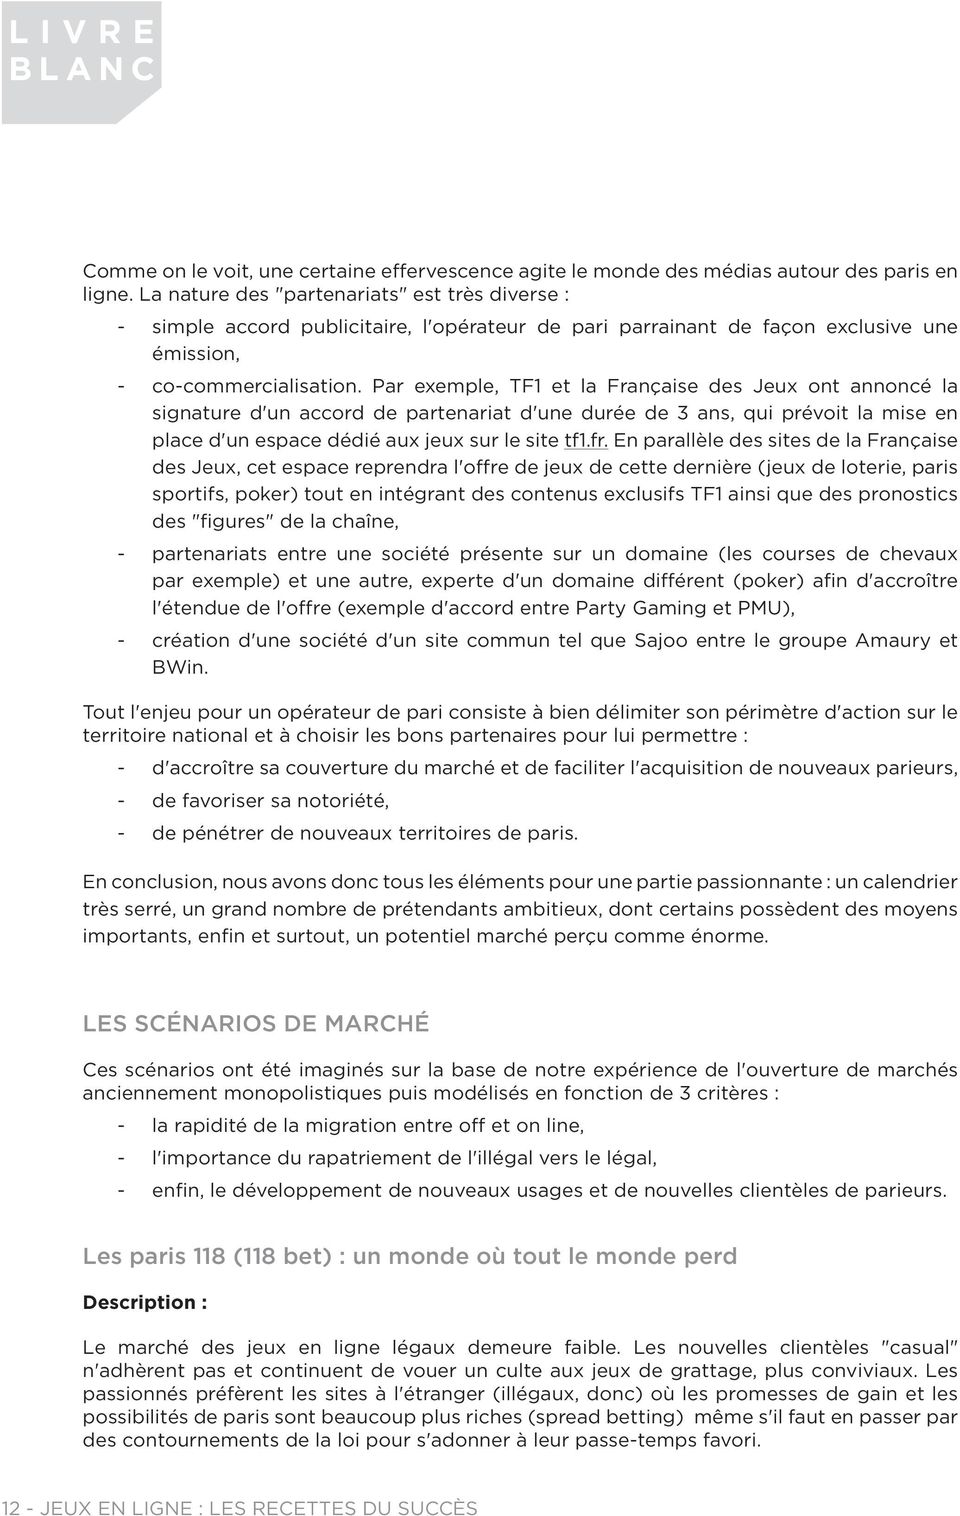 Par exemple, TF1 et la Française des Jeux ont annoncé la signature d'un accord de partenariat d'une durée de 3 ans, qui prévoit la mise en place d'un espace dédié aux jeux sur le site tf1.fr.